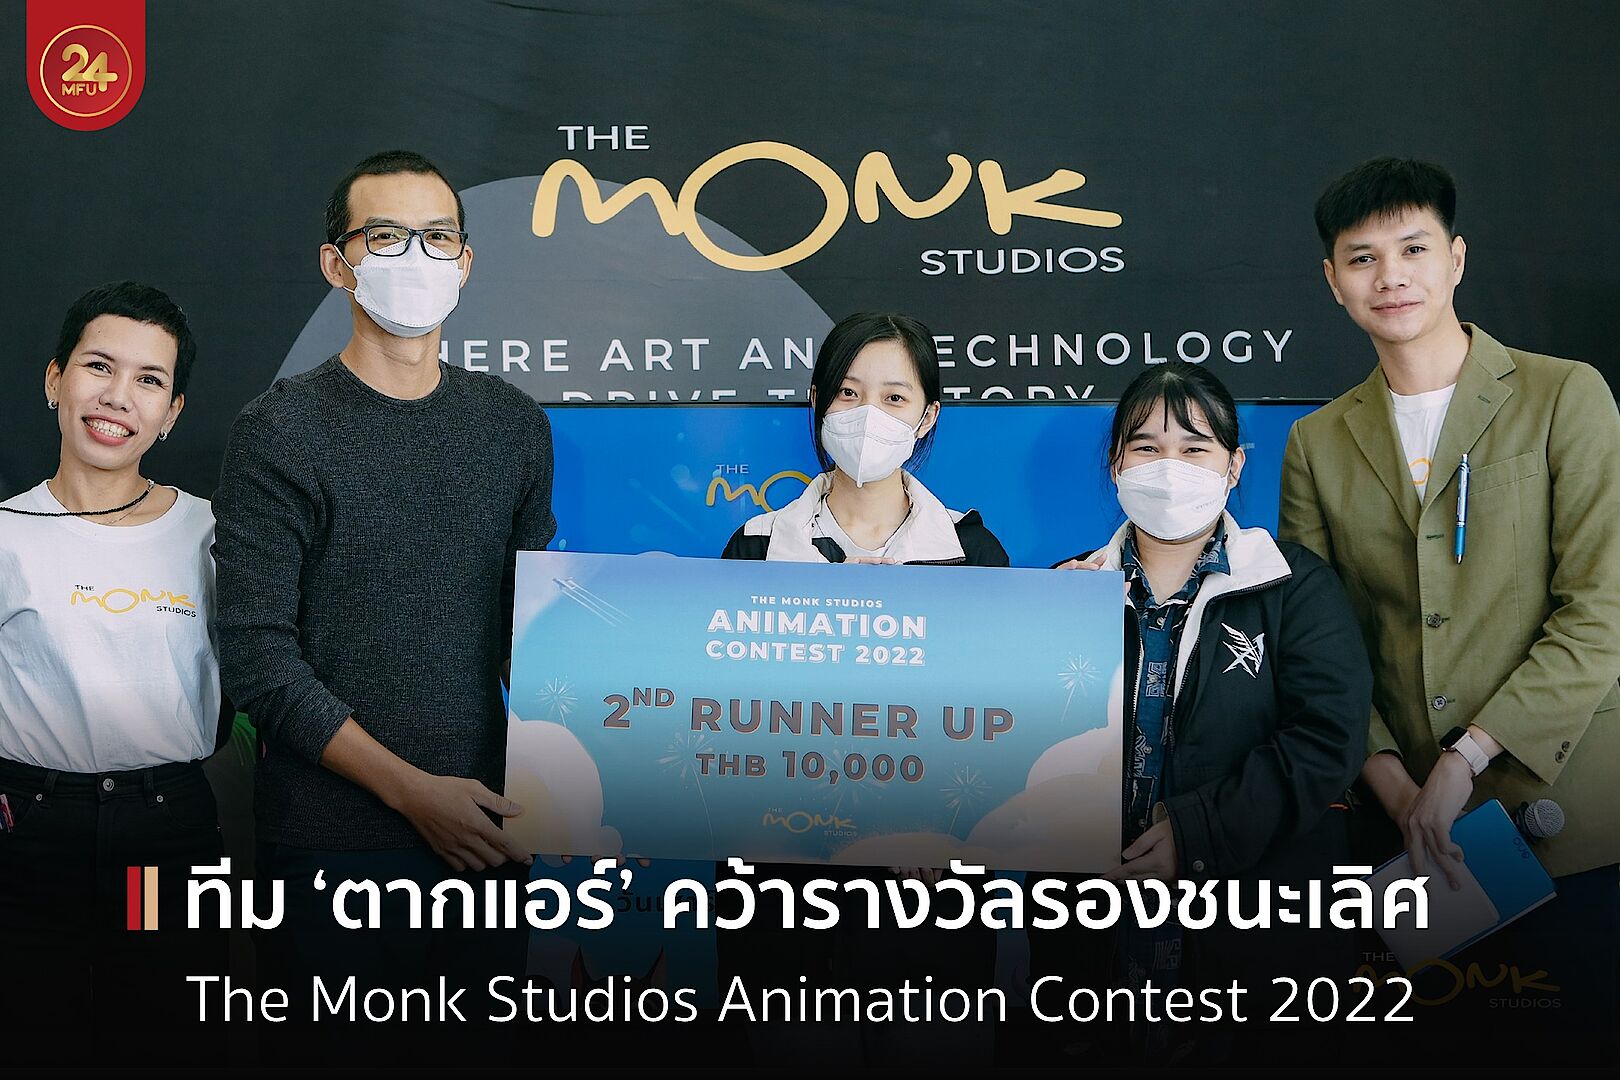 เด็ก มฟล. คว้ารางวัลรองชนะเลิศการประกวด The Monk Studios Animation Contest 2022 